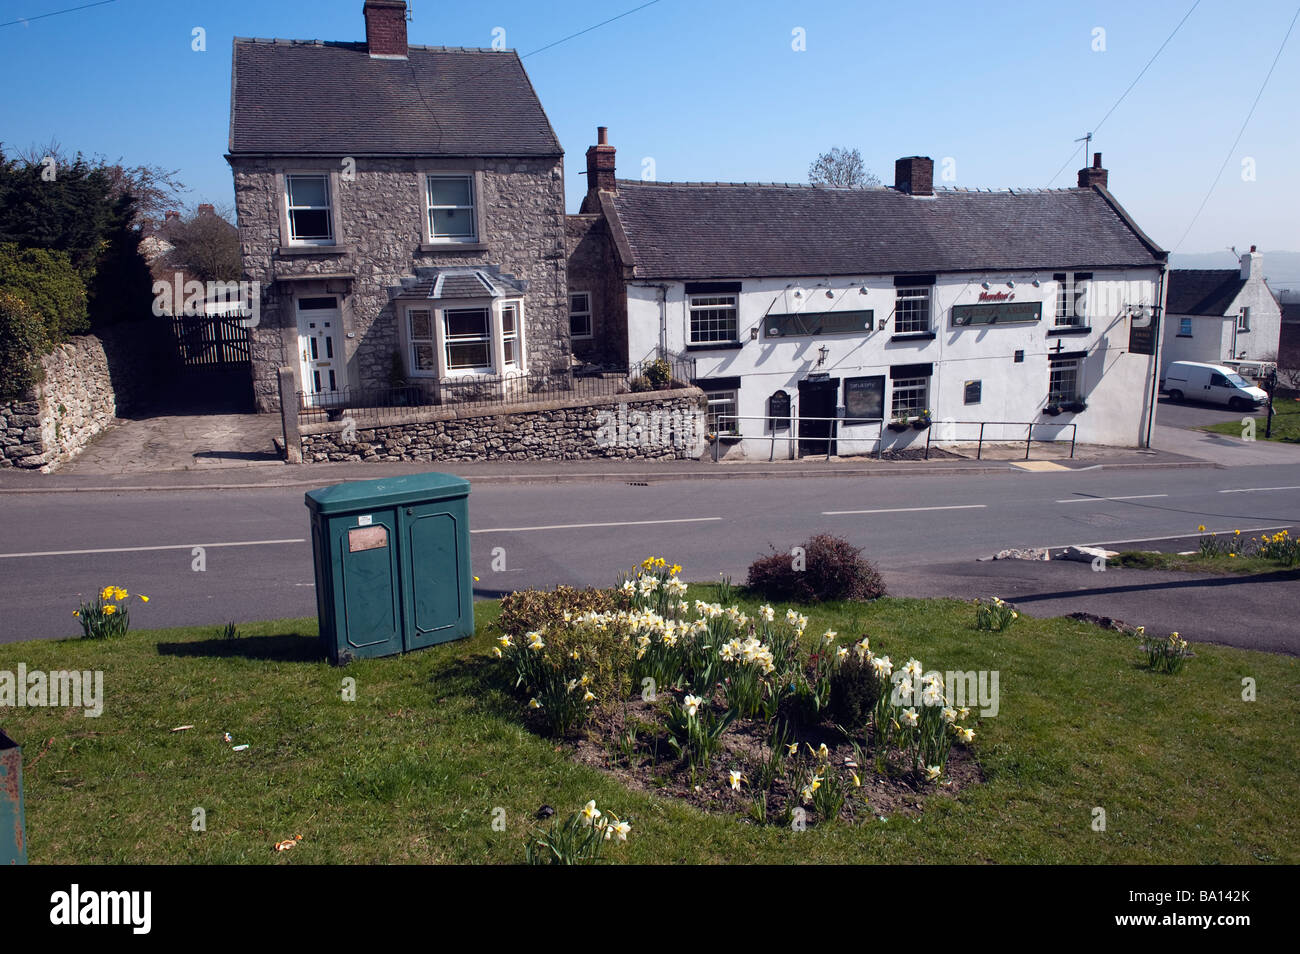 'Nelson les armes", "public house par iddleton Wirksworth', Derbyshire, Angleterre, 'Grande-bretagne', 'Royaume-Uni' Banque D'Images